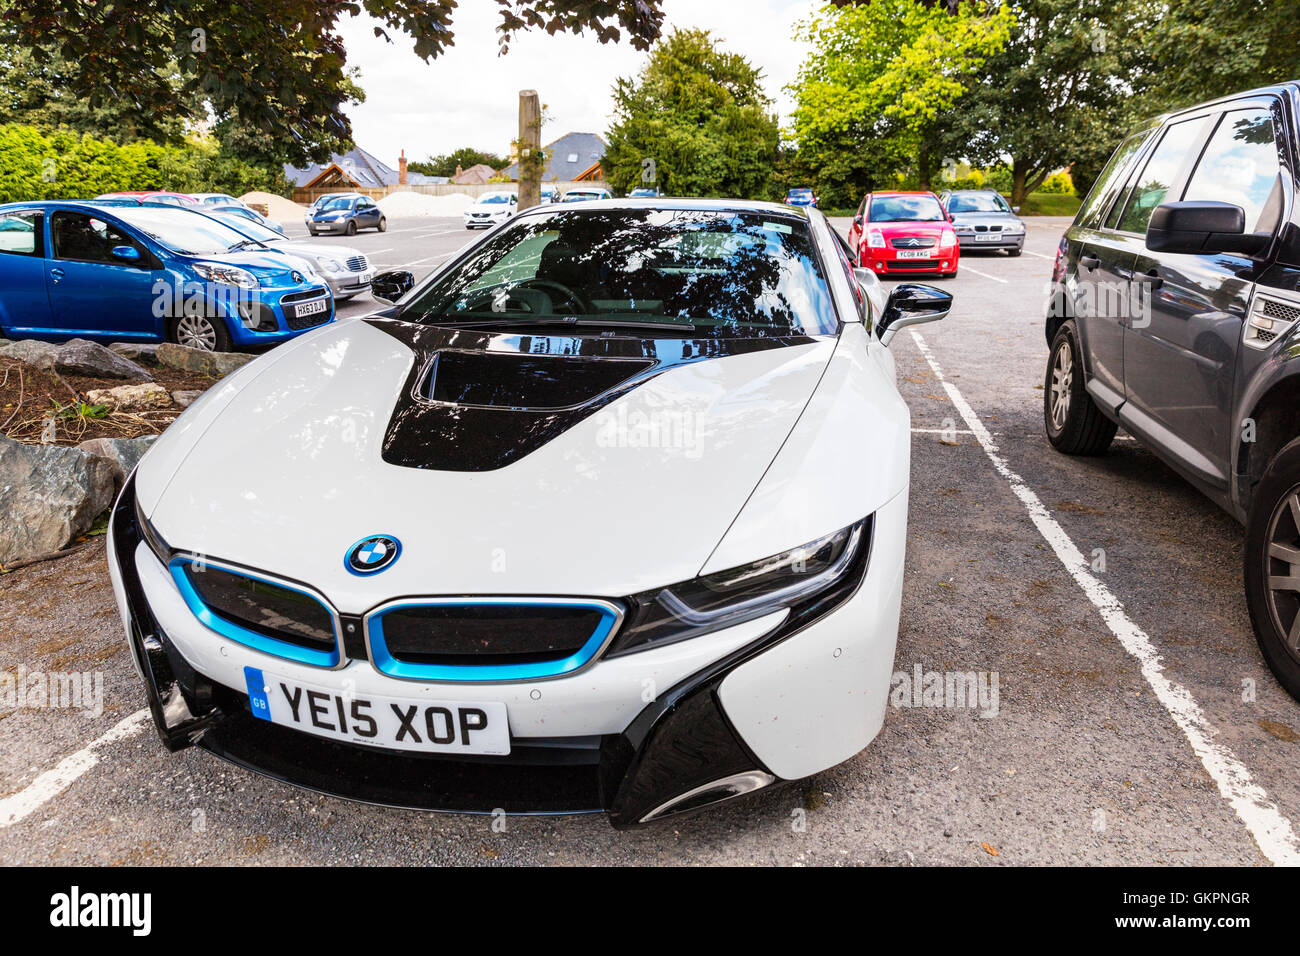 BMW i8 Sportwagen-Plug-in Hybrid-Sportwagen von BMW Fahrzeug entwickelte geparkt Supersportwagen elektrische Kraftstoff Wirtschaft Konzept Vision UK Stockfoto